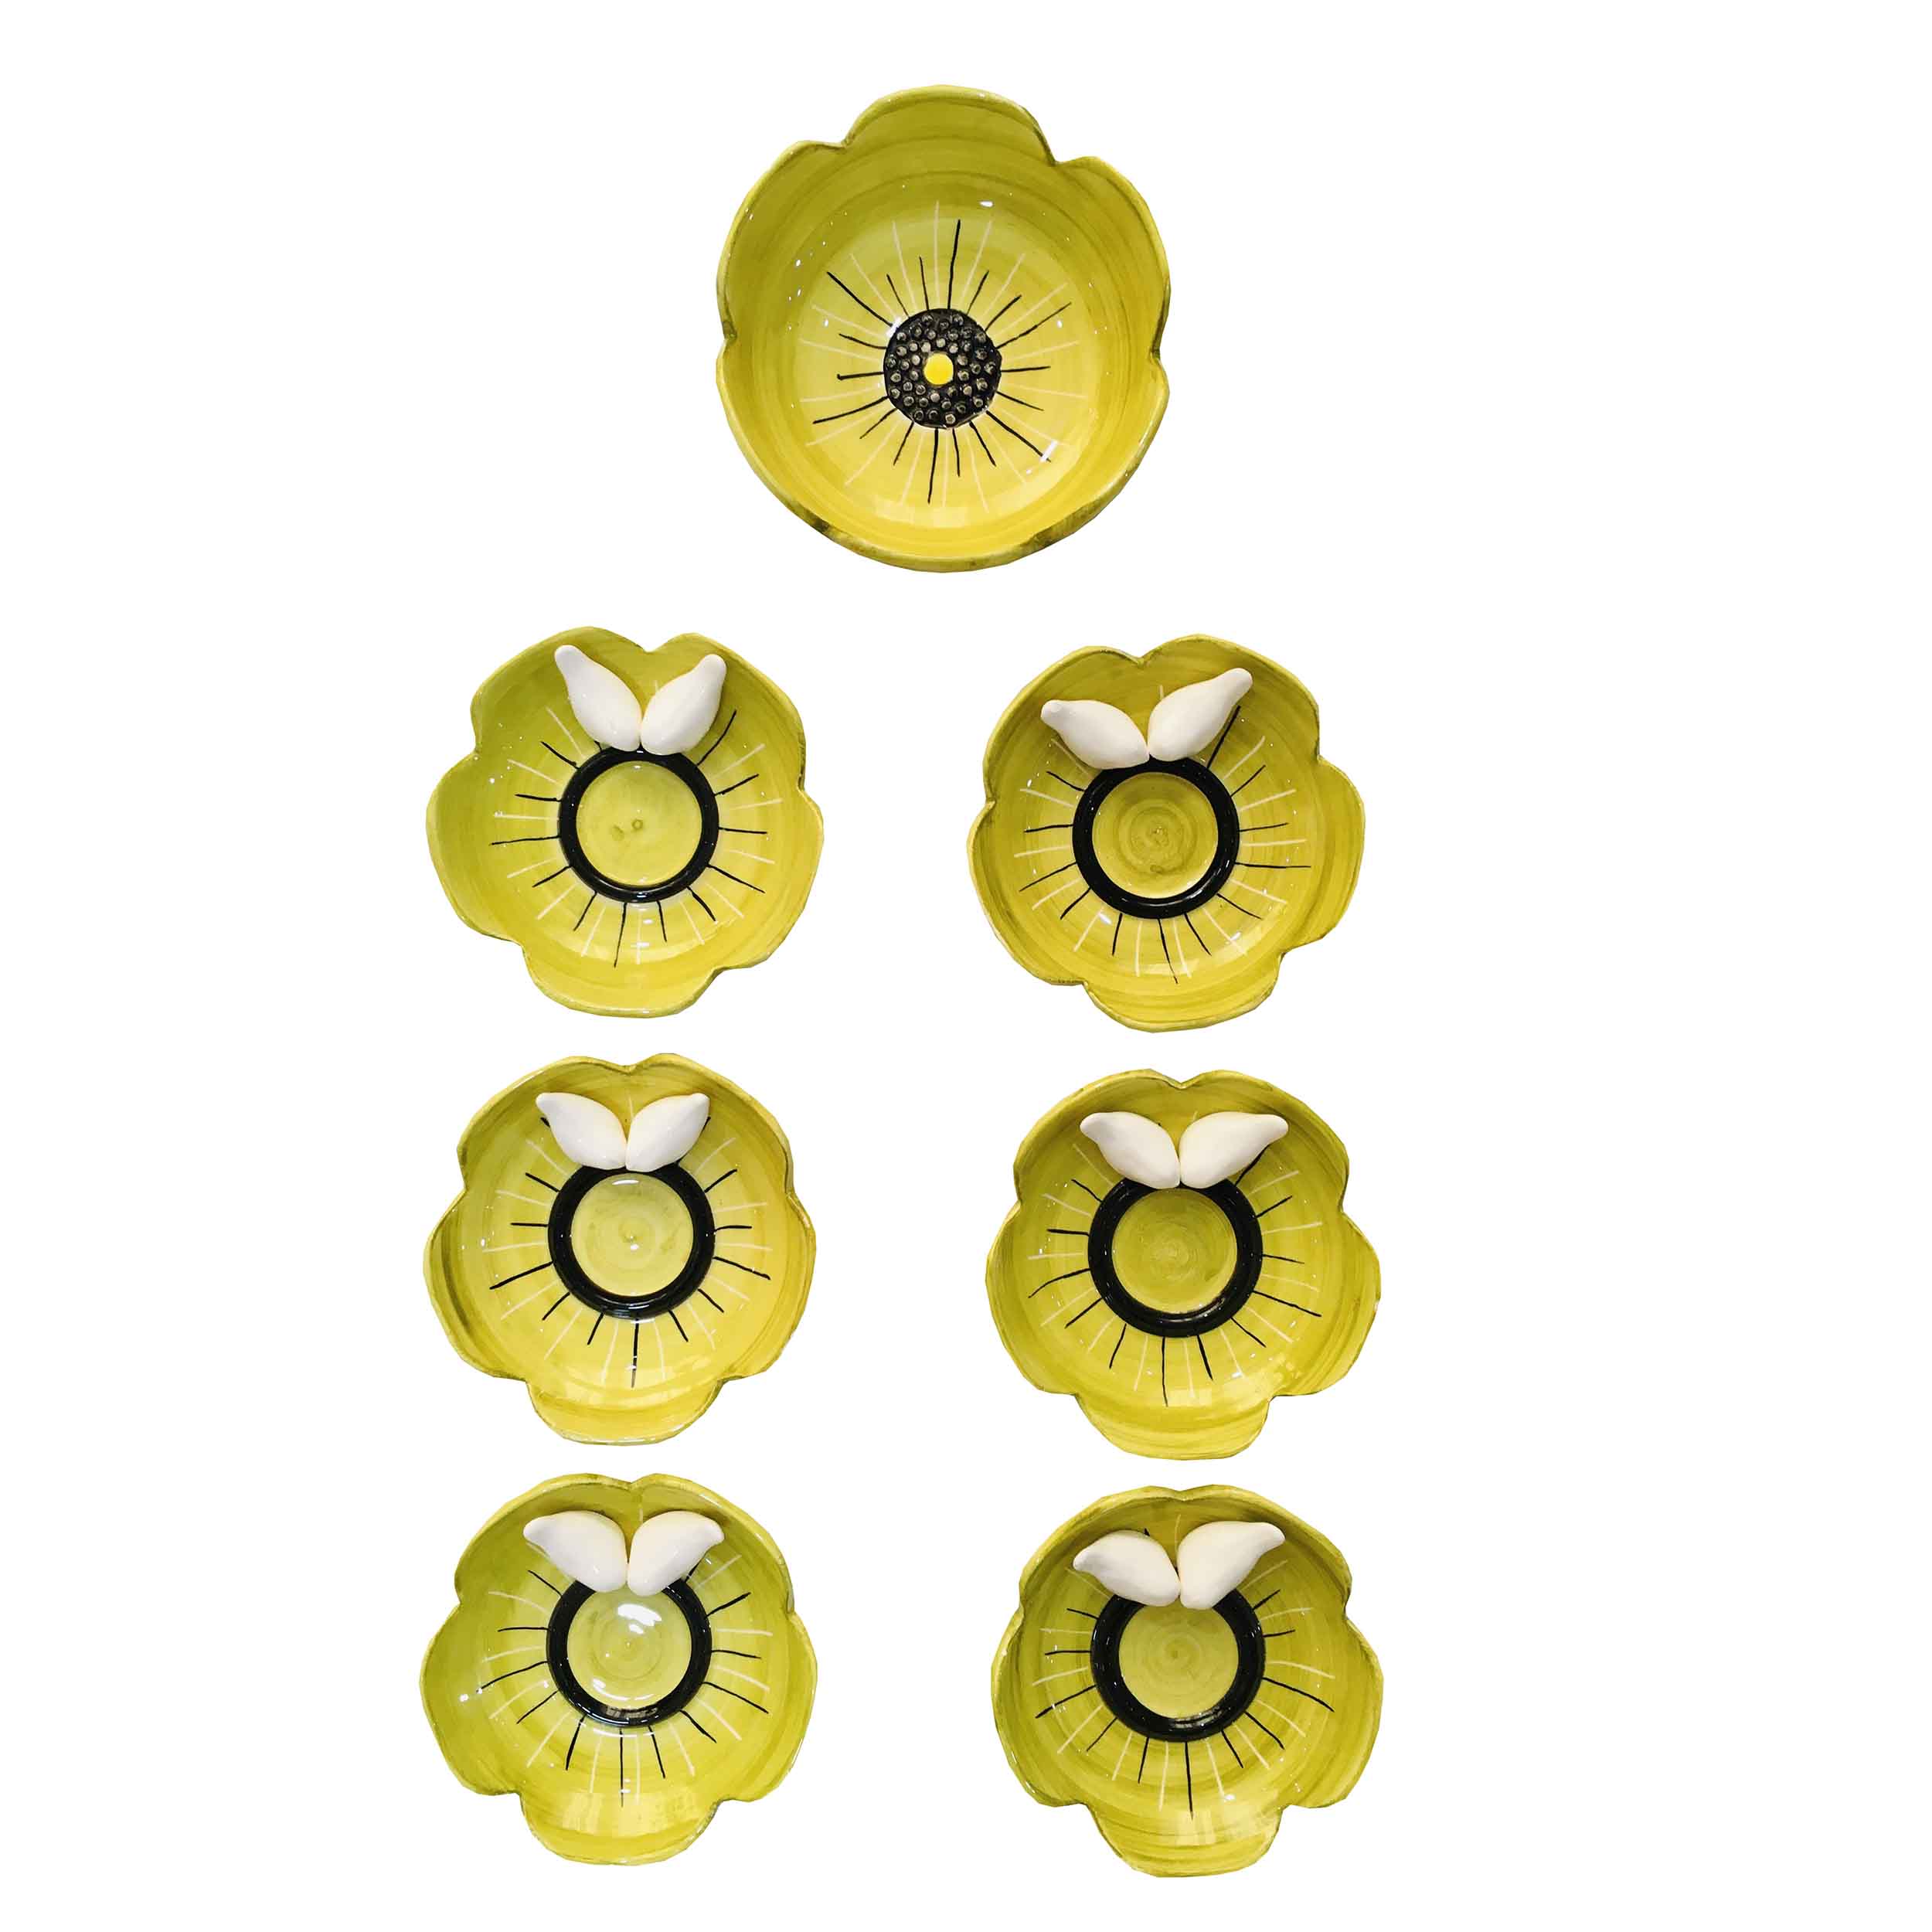 مجموعه ظروف هفت سین 7 پارچه مدل گل بنفشه کد 020